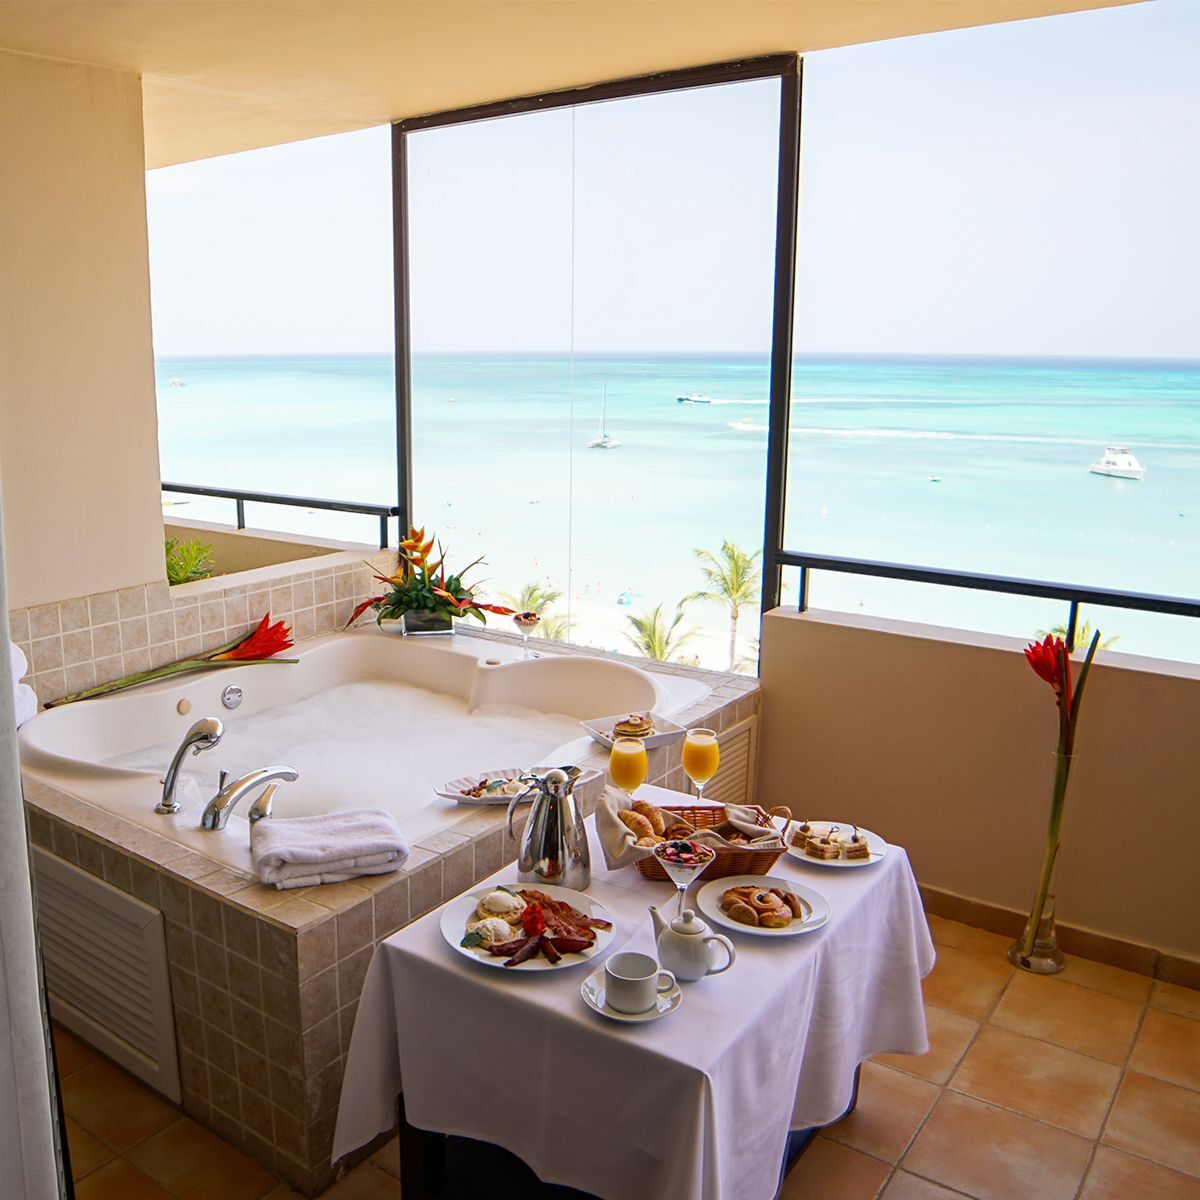 Hotel en Aruba con servicio de habitaciones